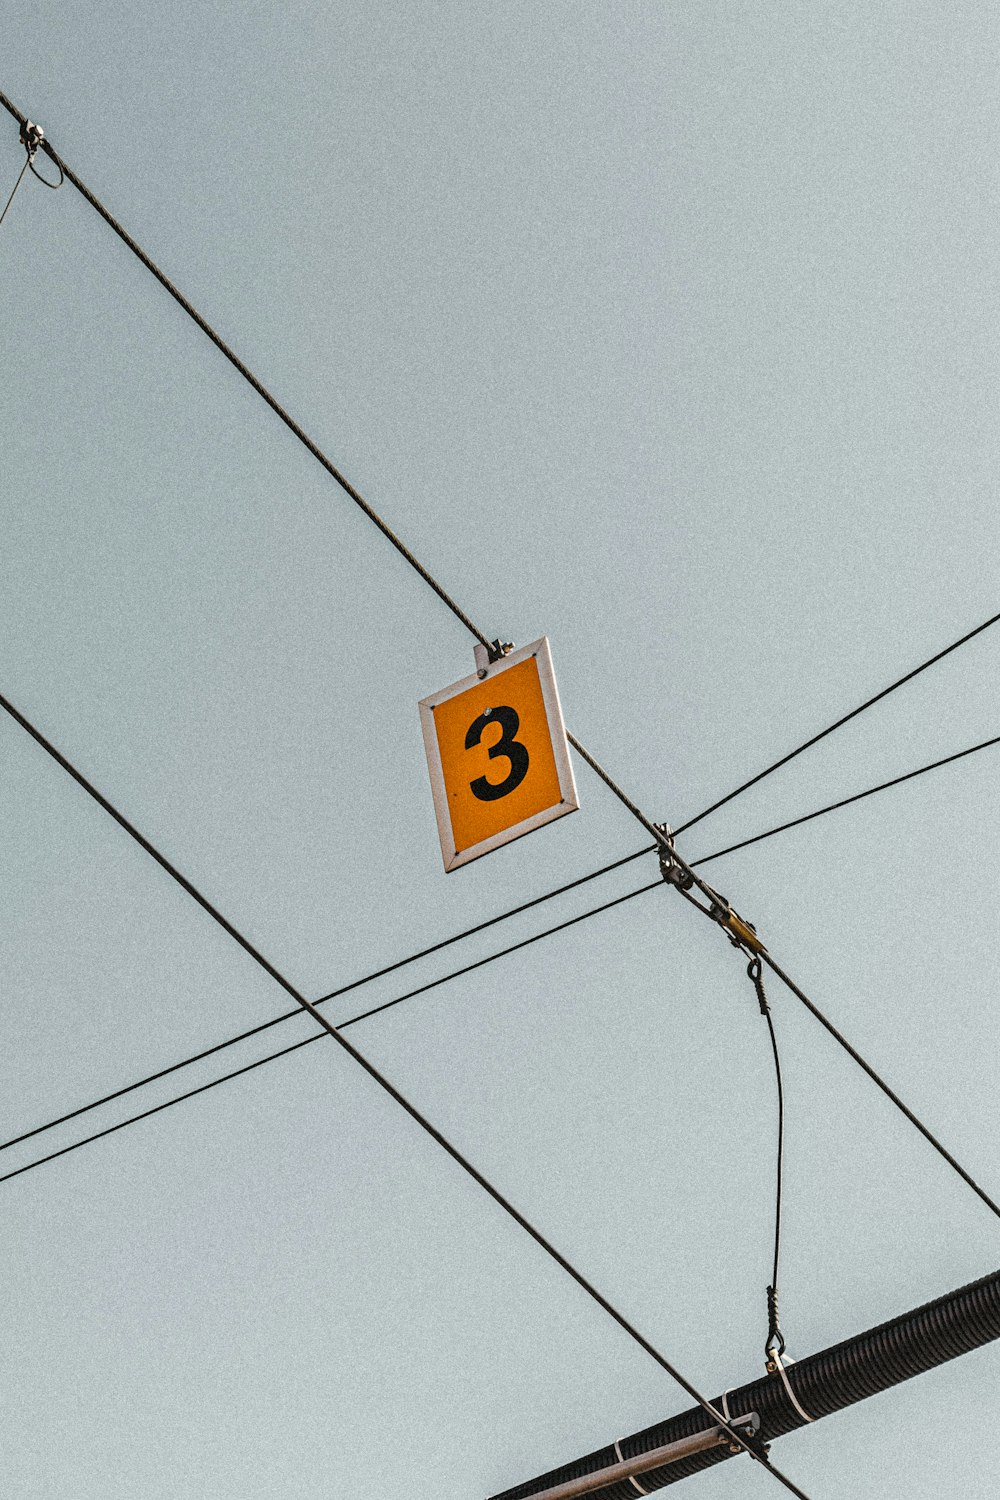 ケーブルから吊り下げられた黄色い3看板